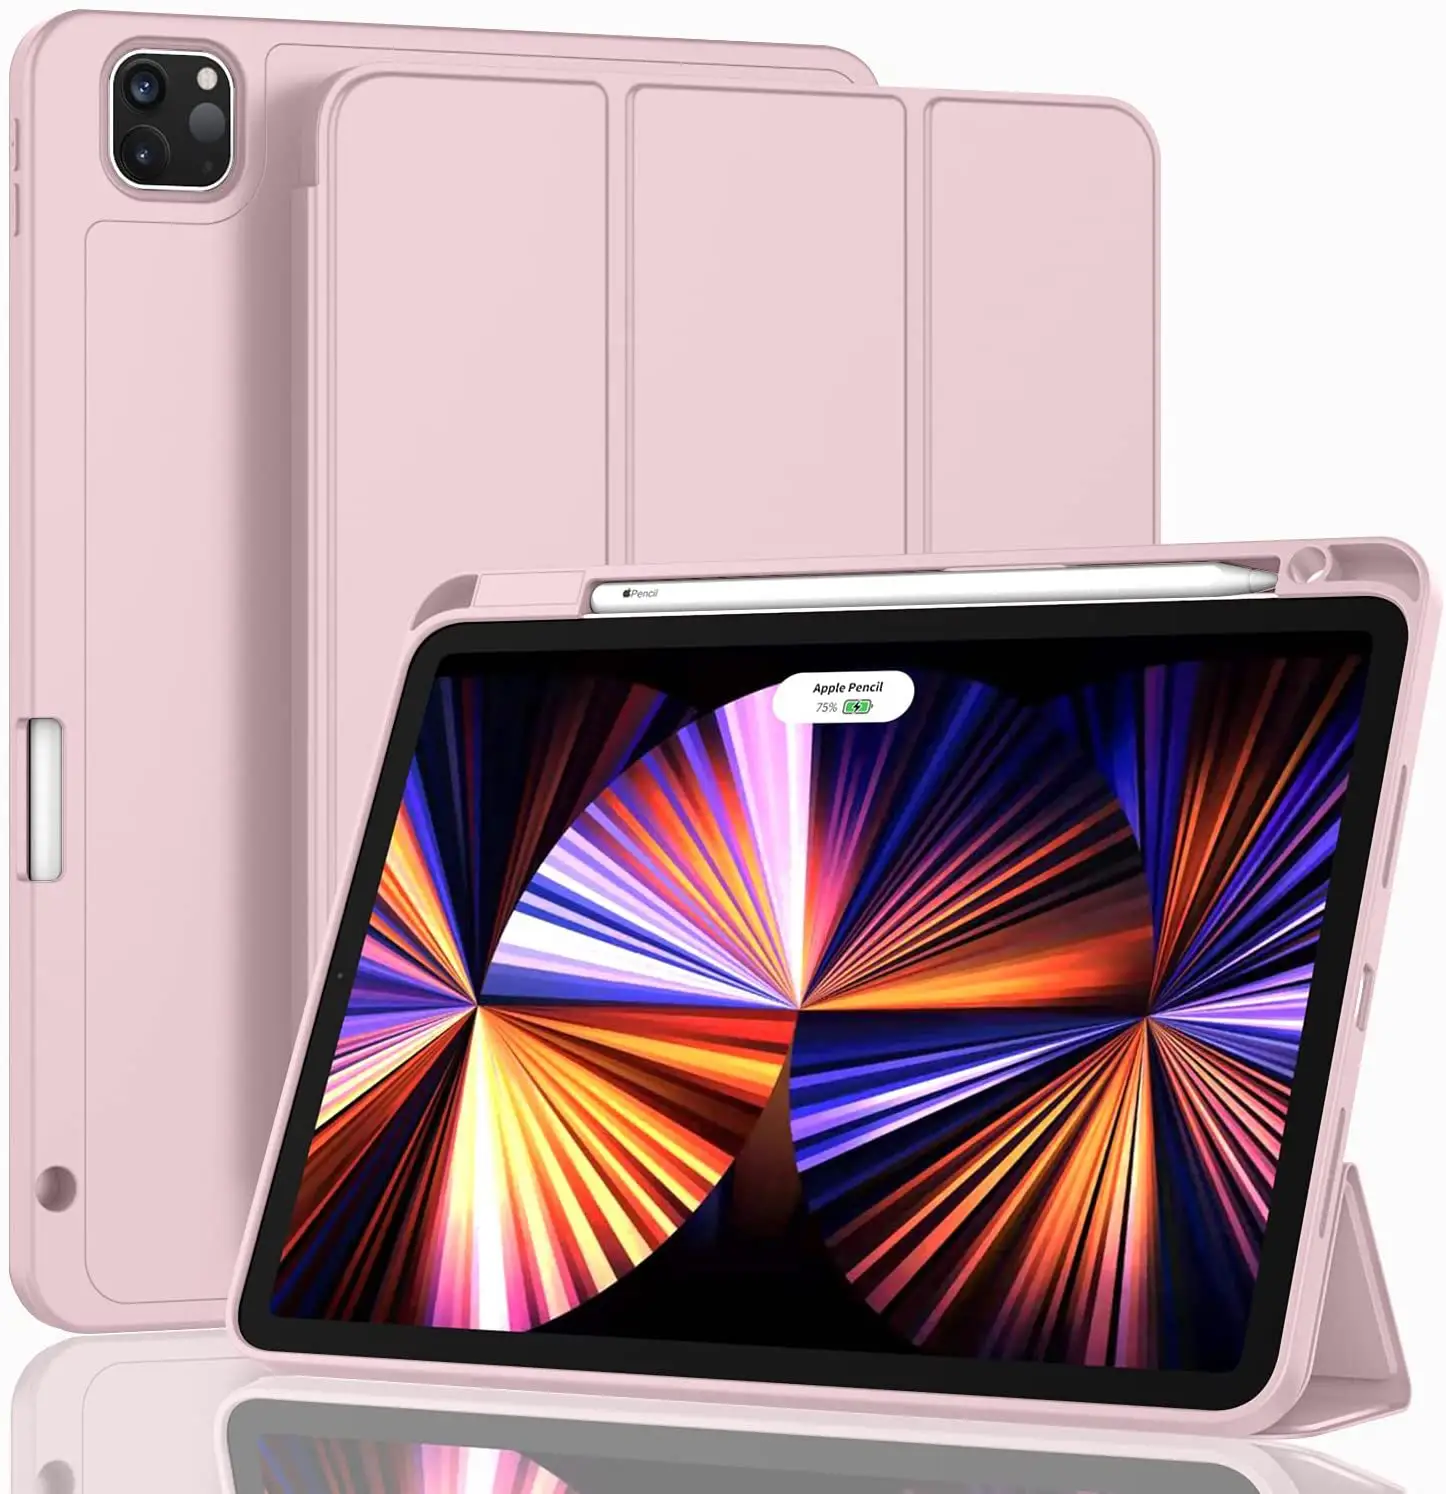 Gấp thông minh Bìa Silicone Leather Case cho iPad air4/air3 sang trọng bảo vệ máy tính bảng bao gồm bút khe cắm cho iPad Pro 12.9/11/10.5